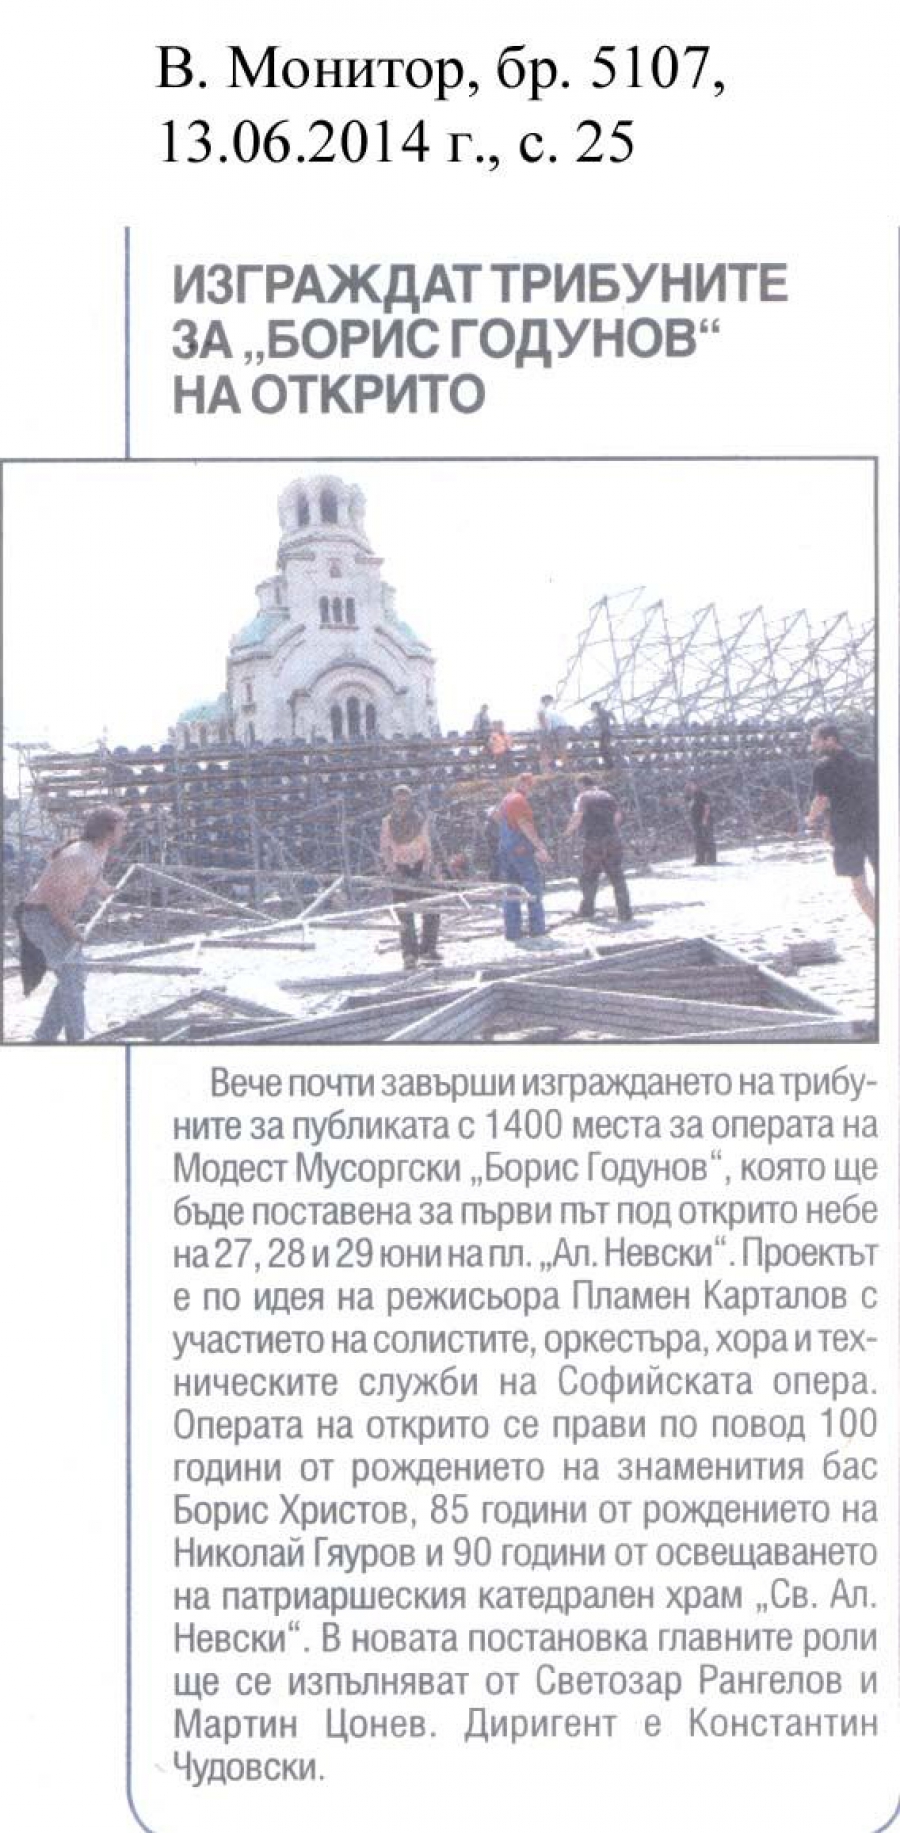 Изграждат трибуните на "Борис Годунов" на открито - в-к Монитор - 13.06.2014